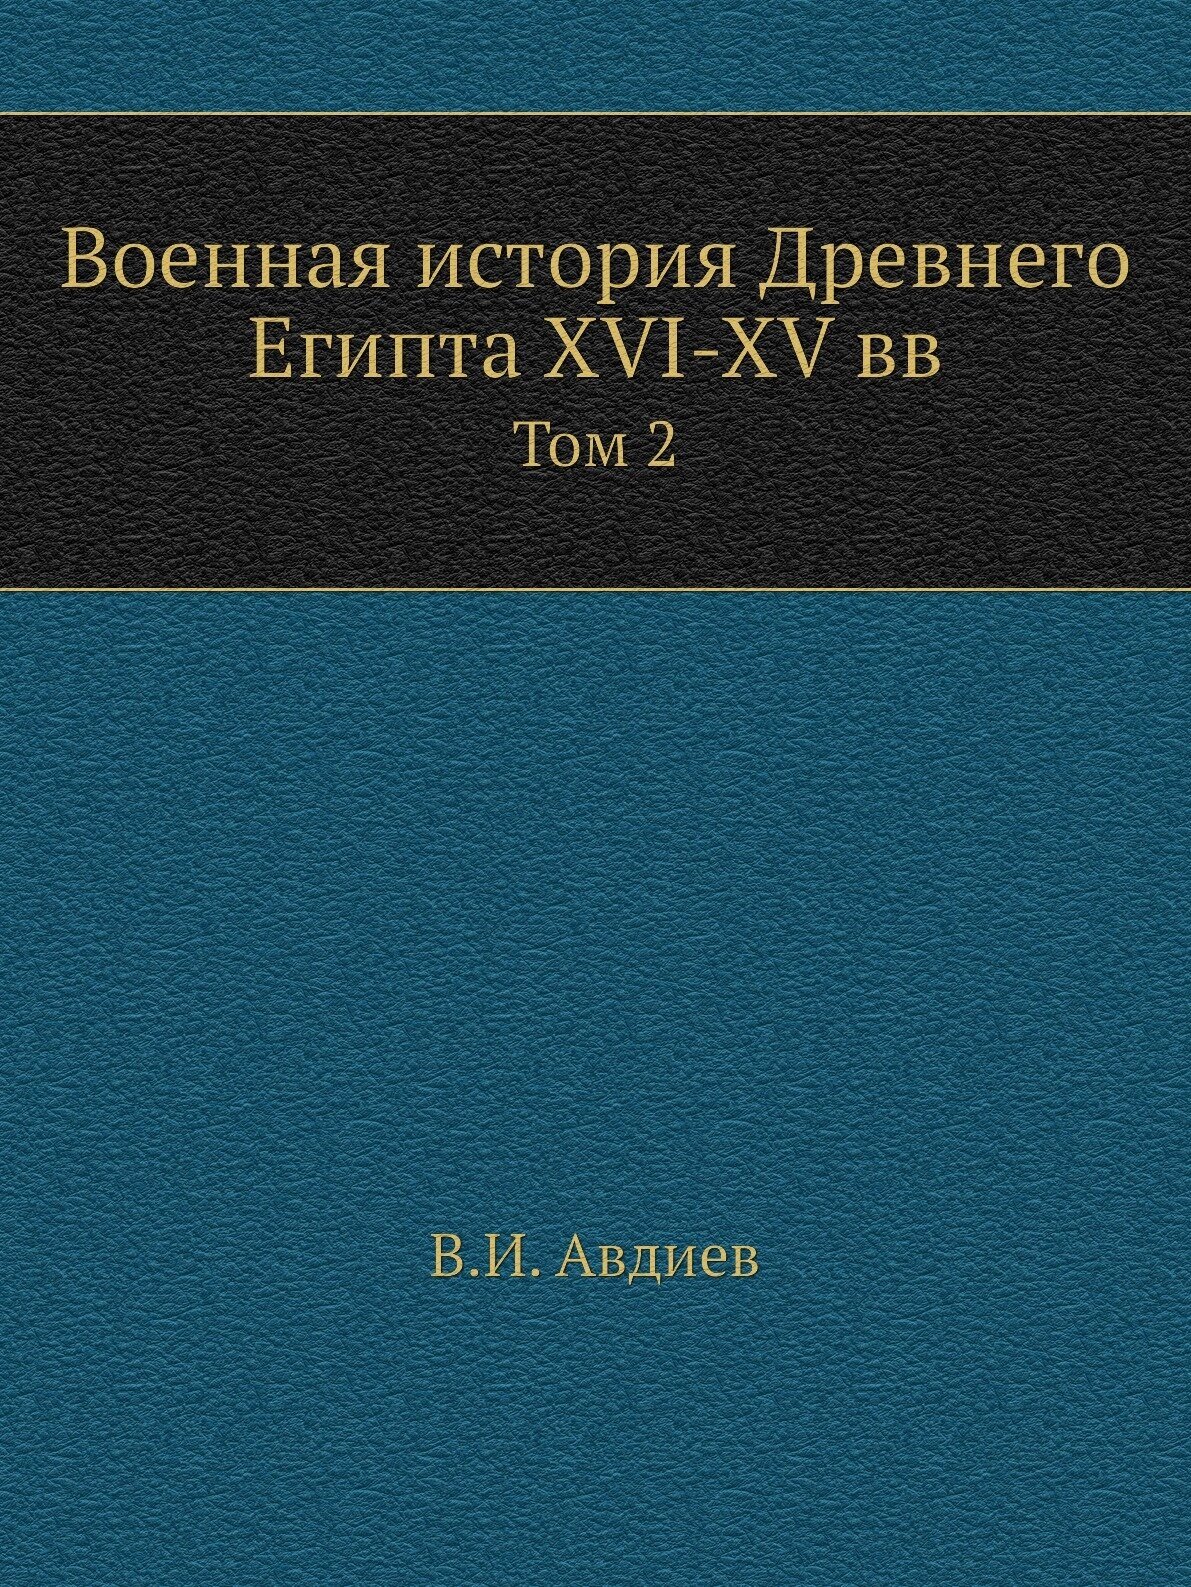 Военная история Древнего Египта XVI-XV вв. Том 2